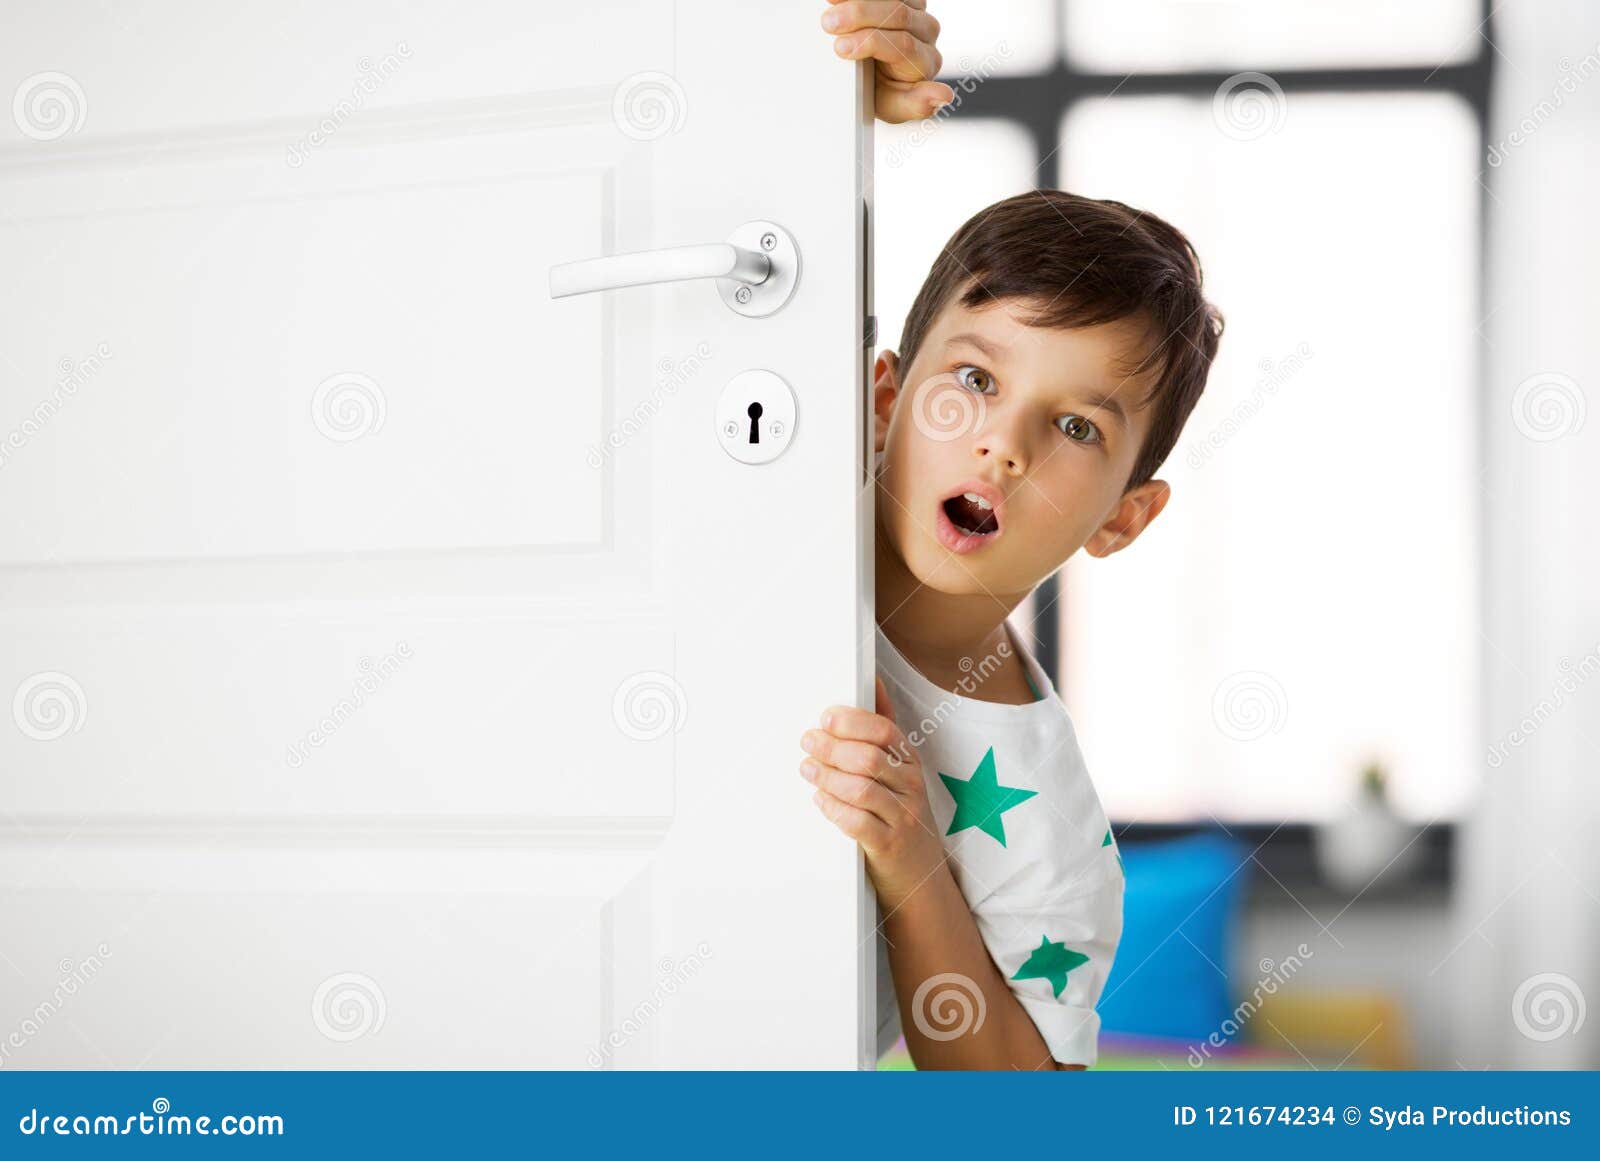 Мальчик и дверь открылась. Мальчик выглядывает. Мальчик выглядывает из двери. Ребенок выглядывает из за двери. Человек выглядывает из двери.